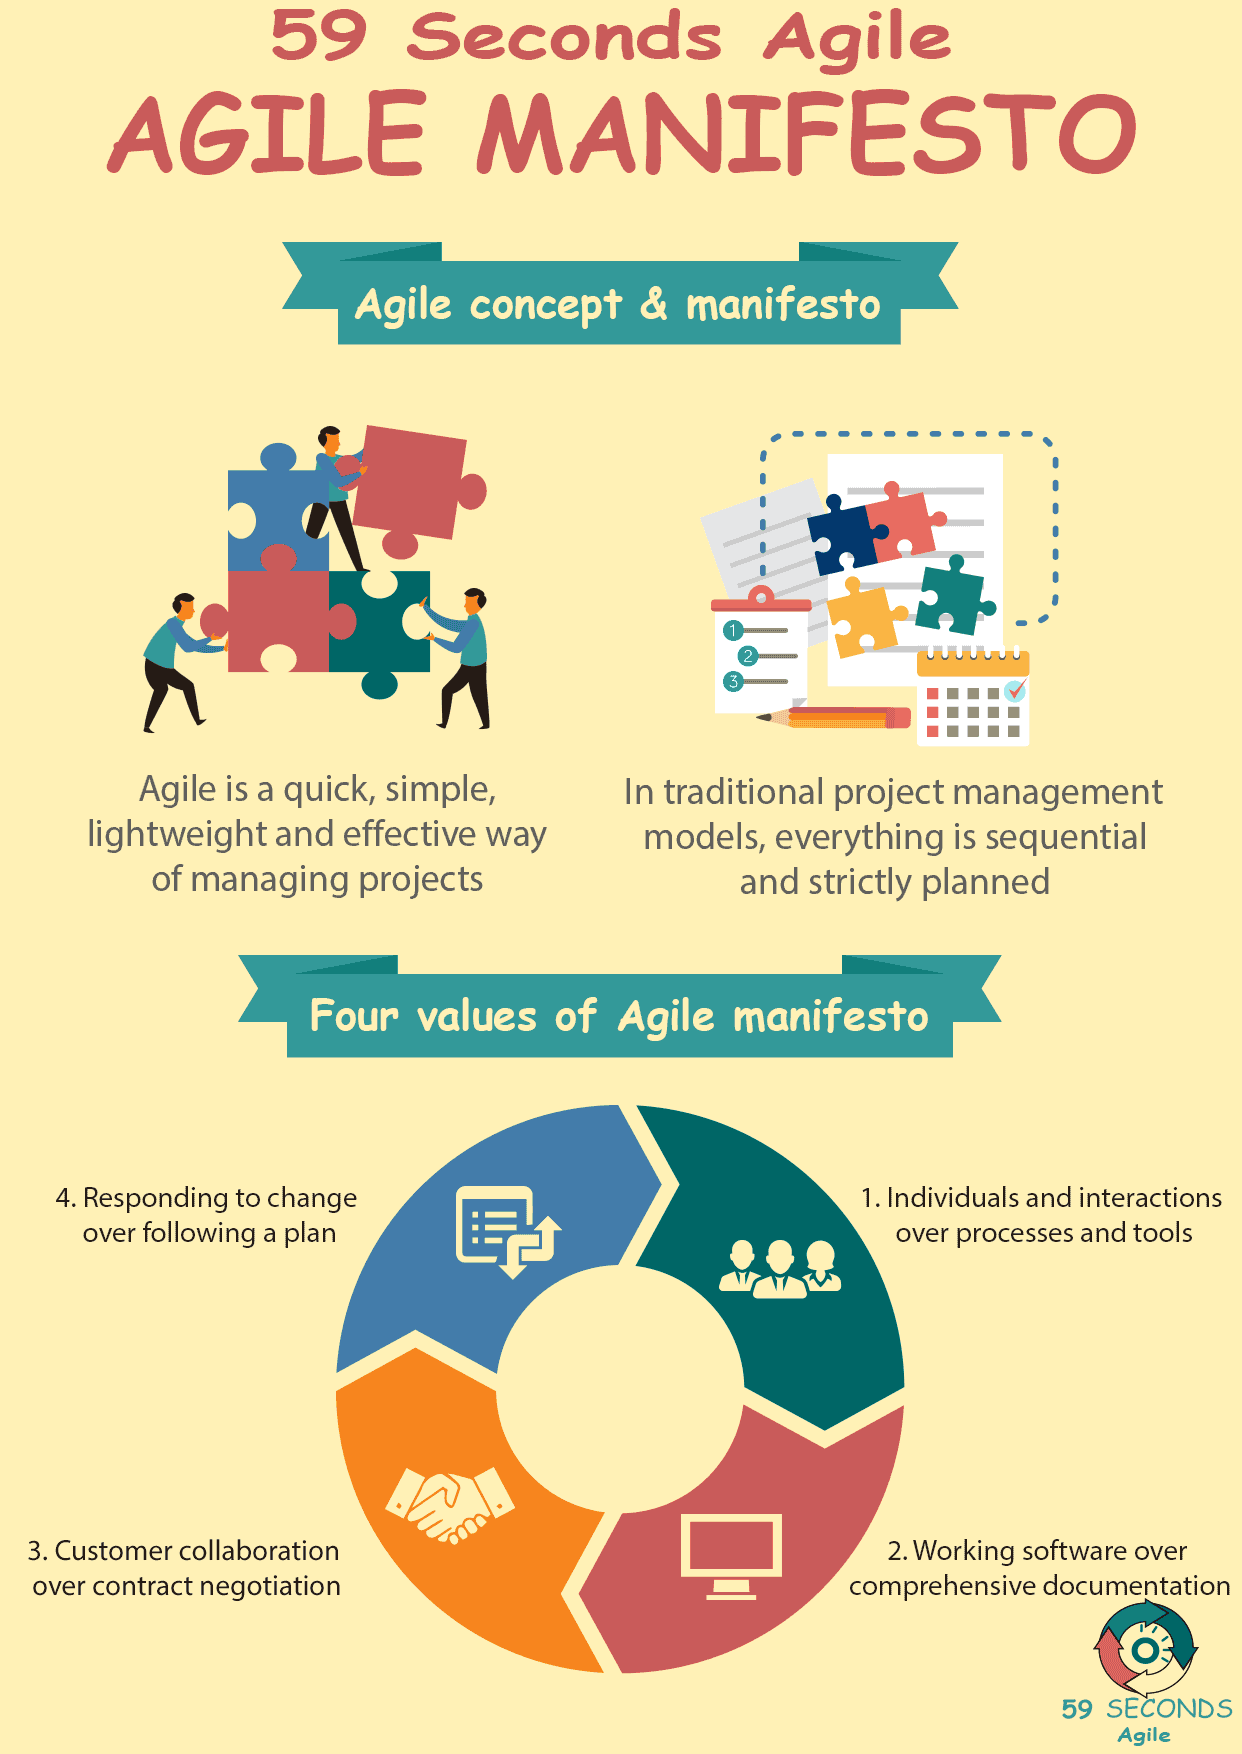 Four Values of the Agile Manifesto 59 Seconds Agile